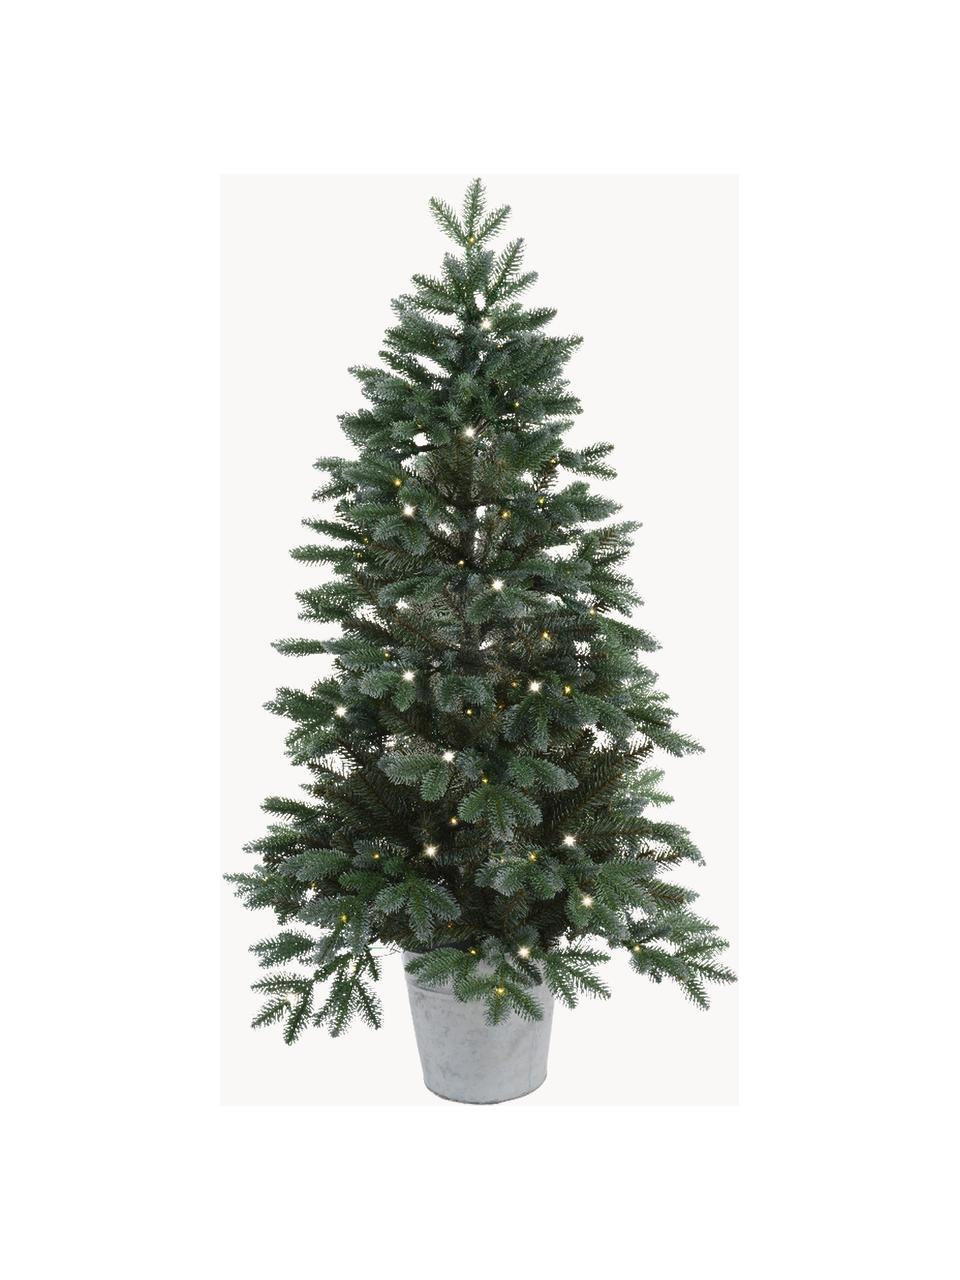 Umělý vánoční LED stromeček Trondheim, 90 cm, Umělá hmota (PVC), Tmavě zelená, Ø 55 cm, V 90 cm